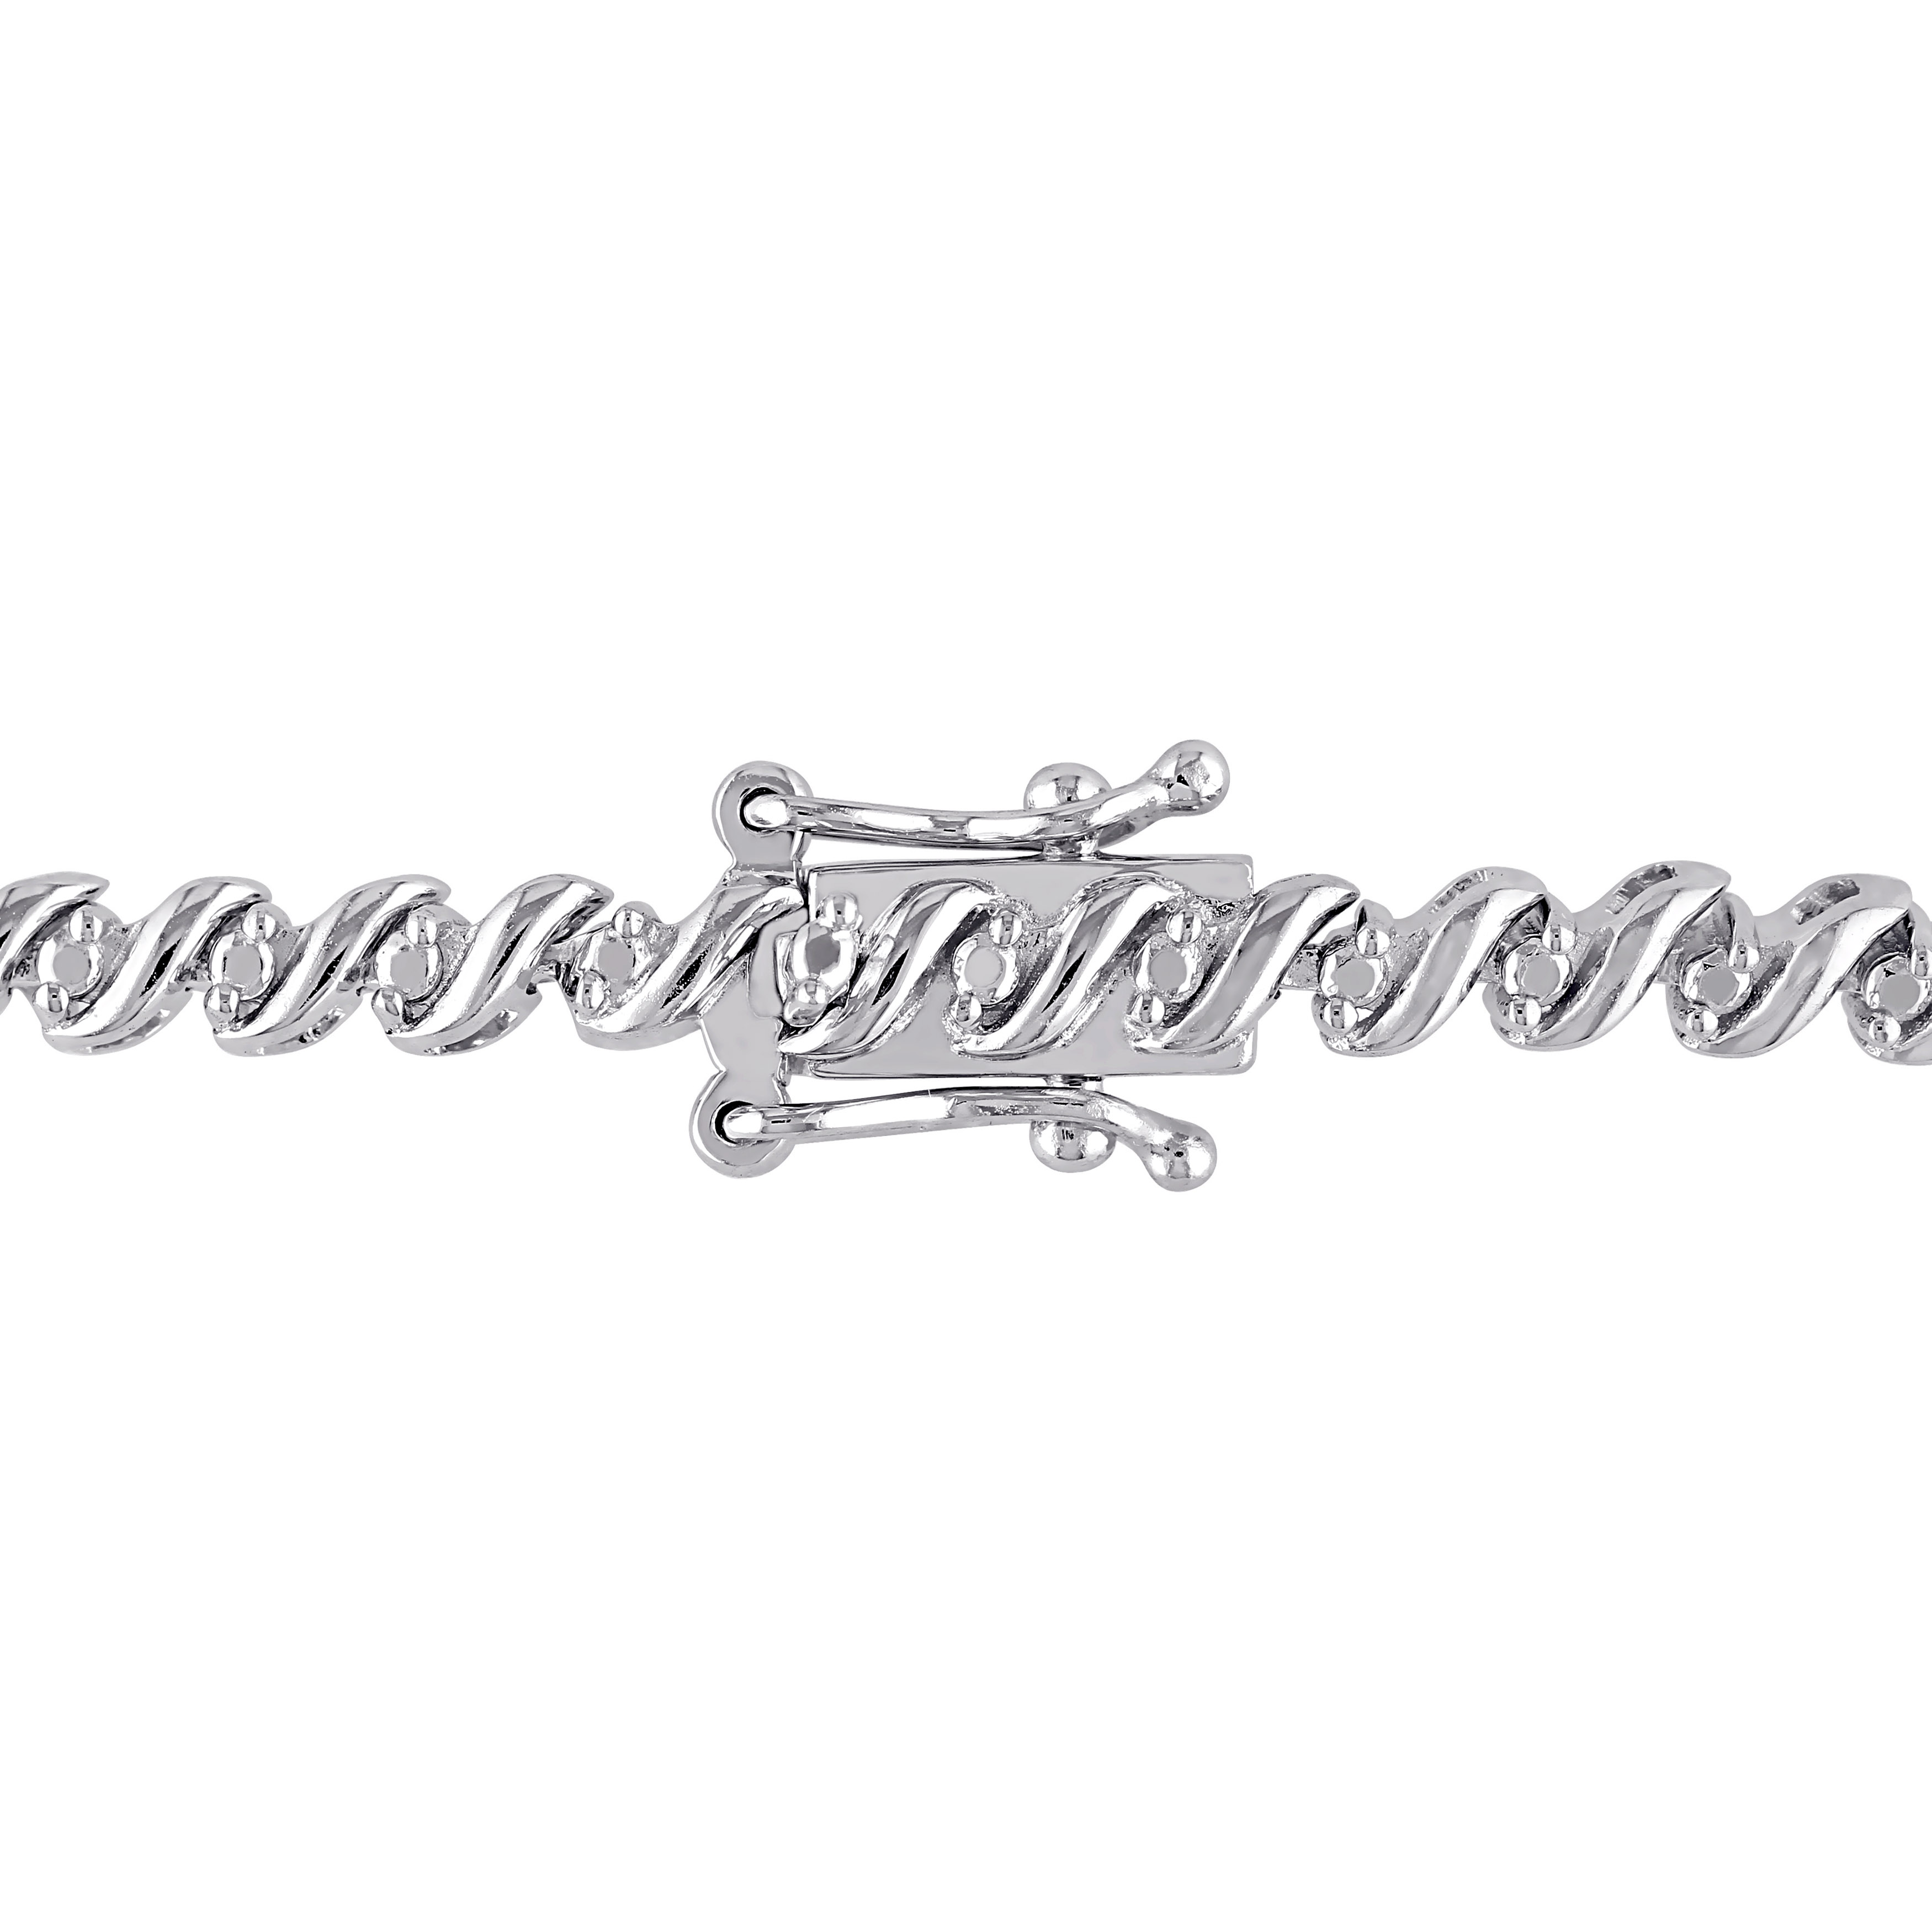 1/2 CT TW Diamond S-Shape Tennis Bracelet in Sterling Silver - 7.5 in.